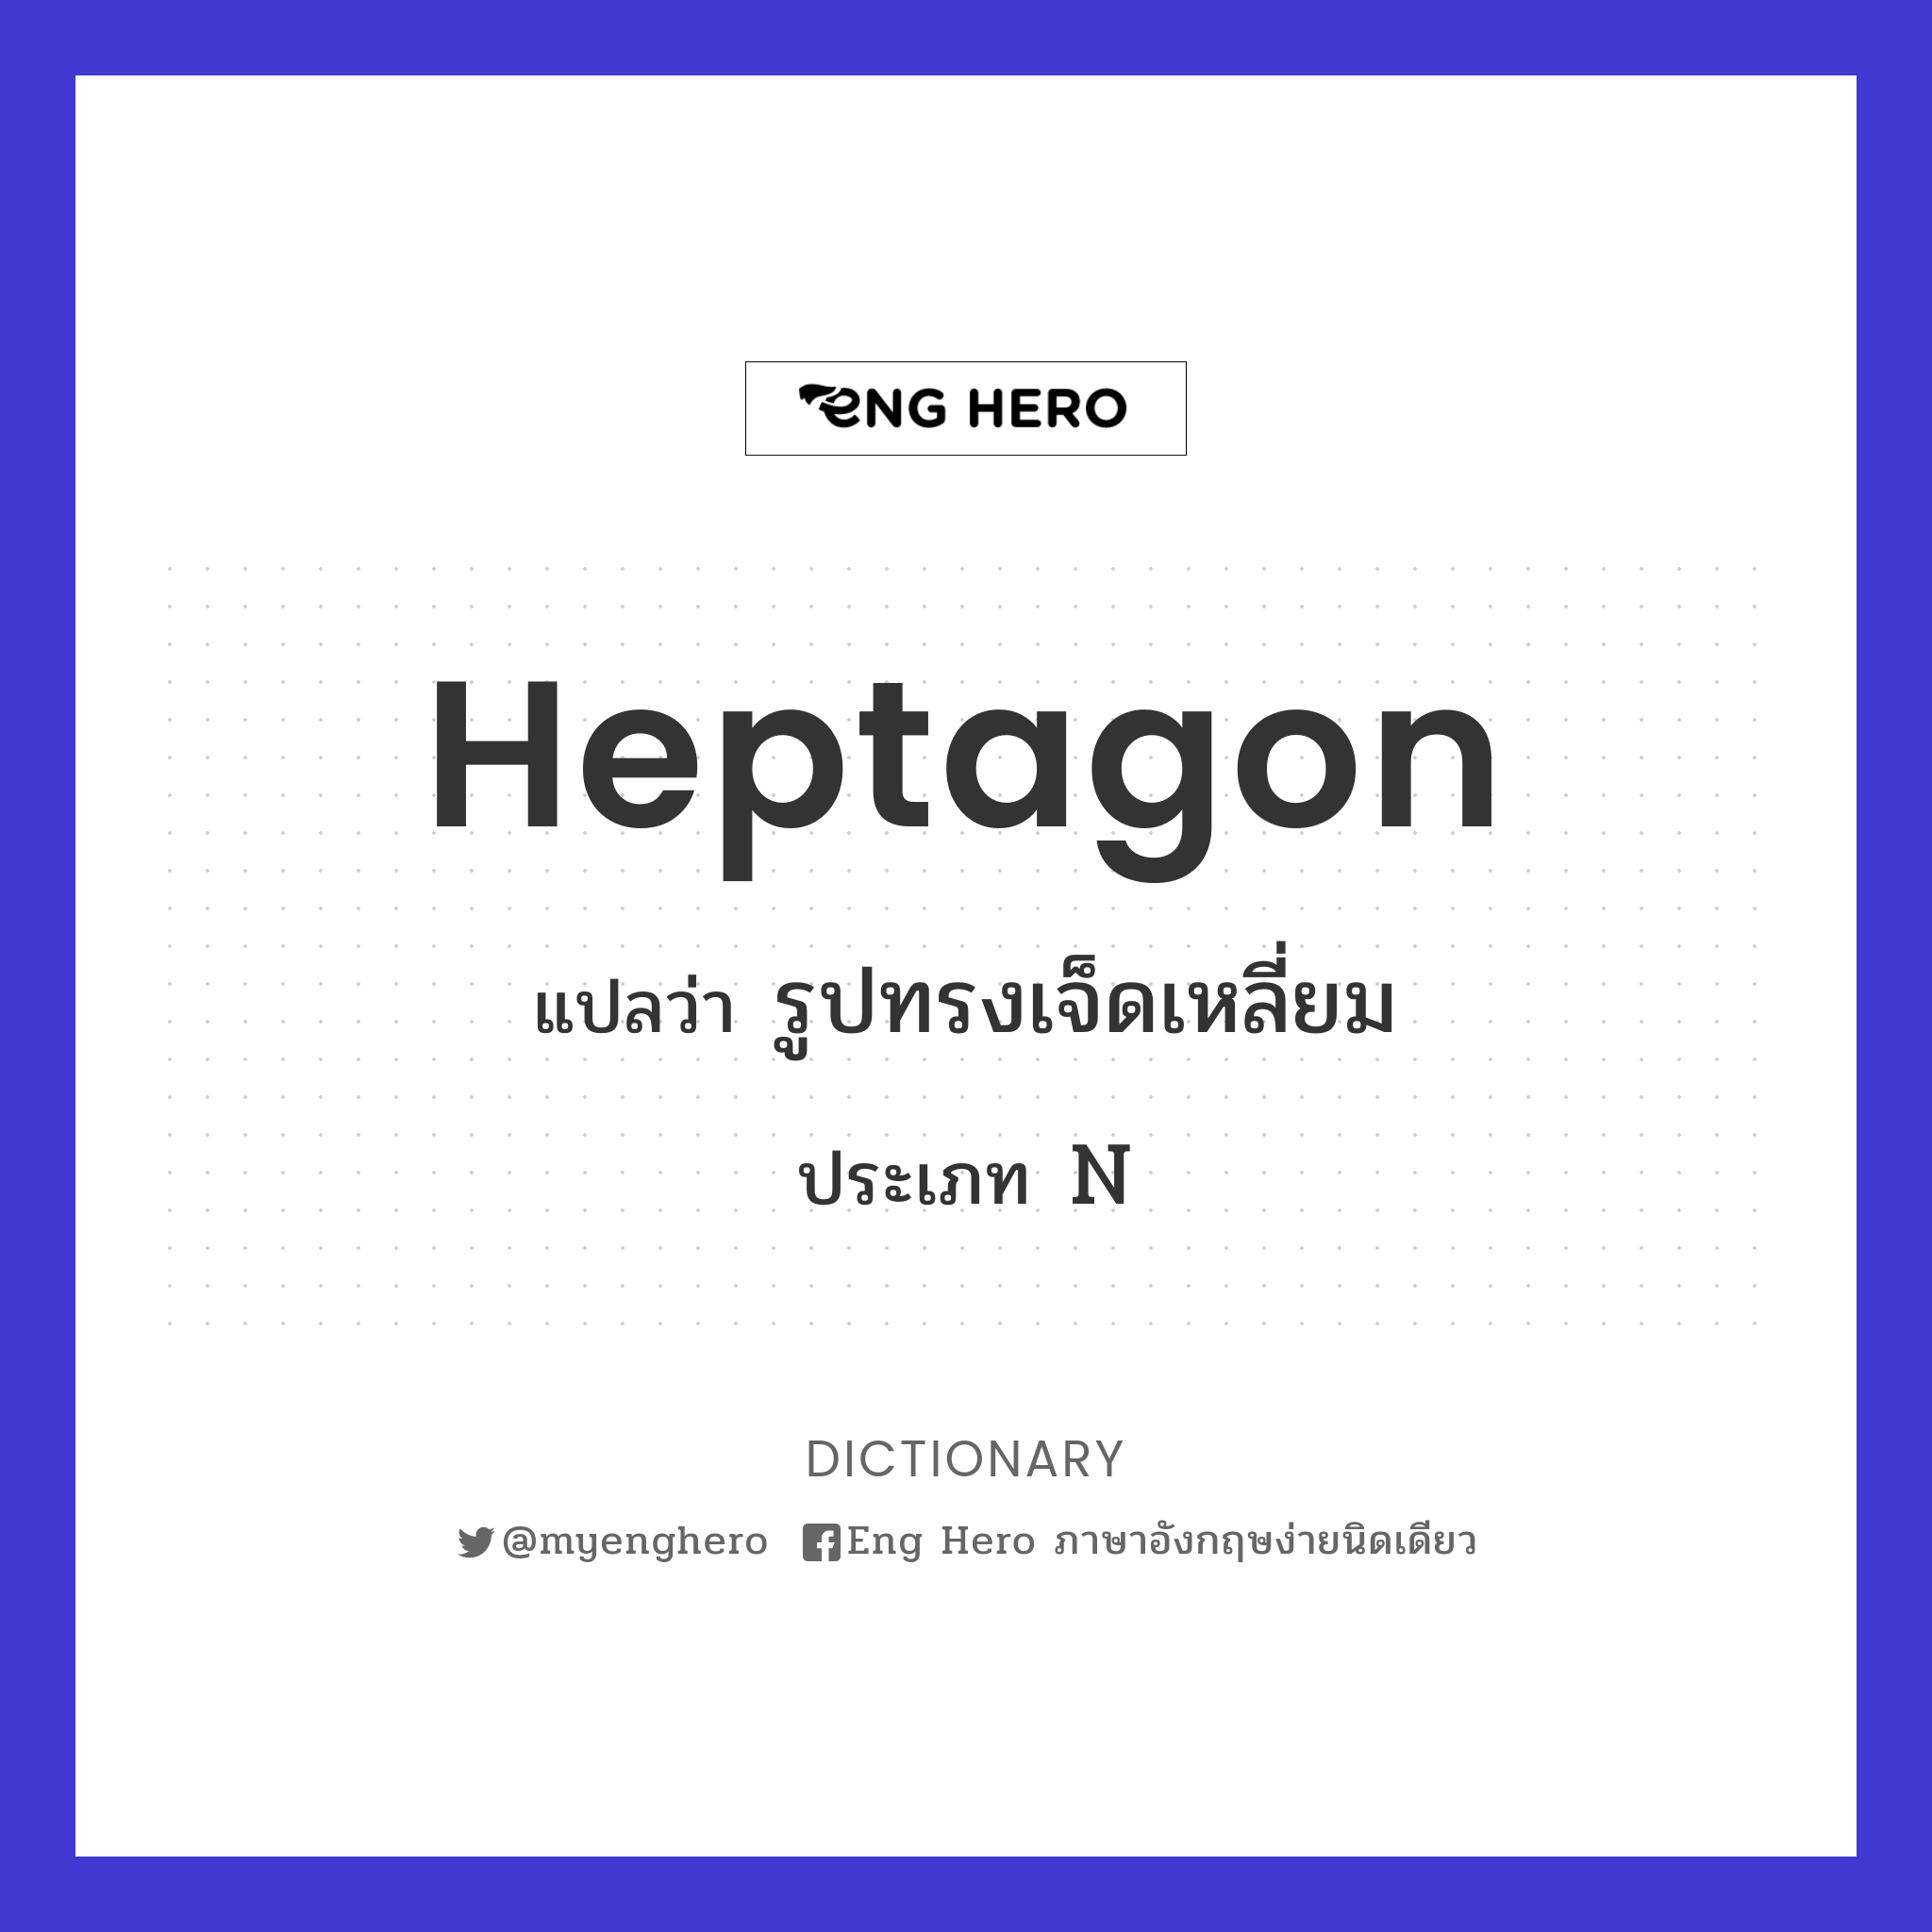 heptagon